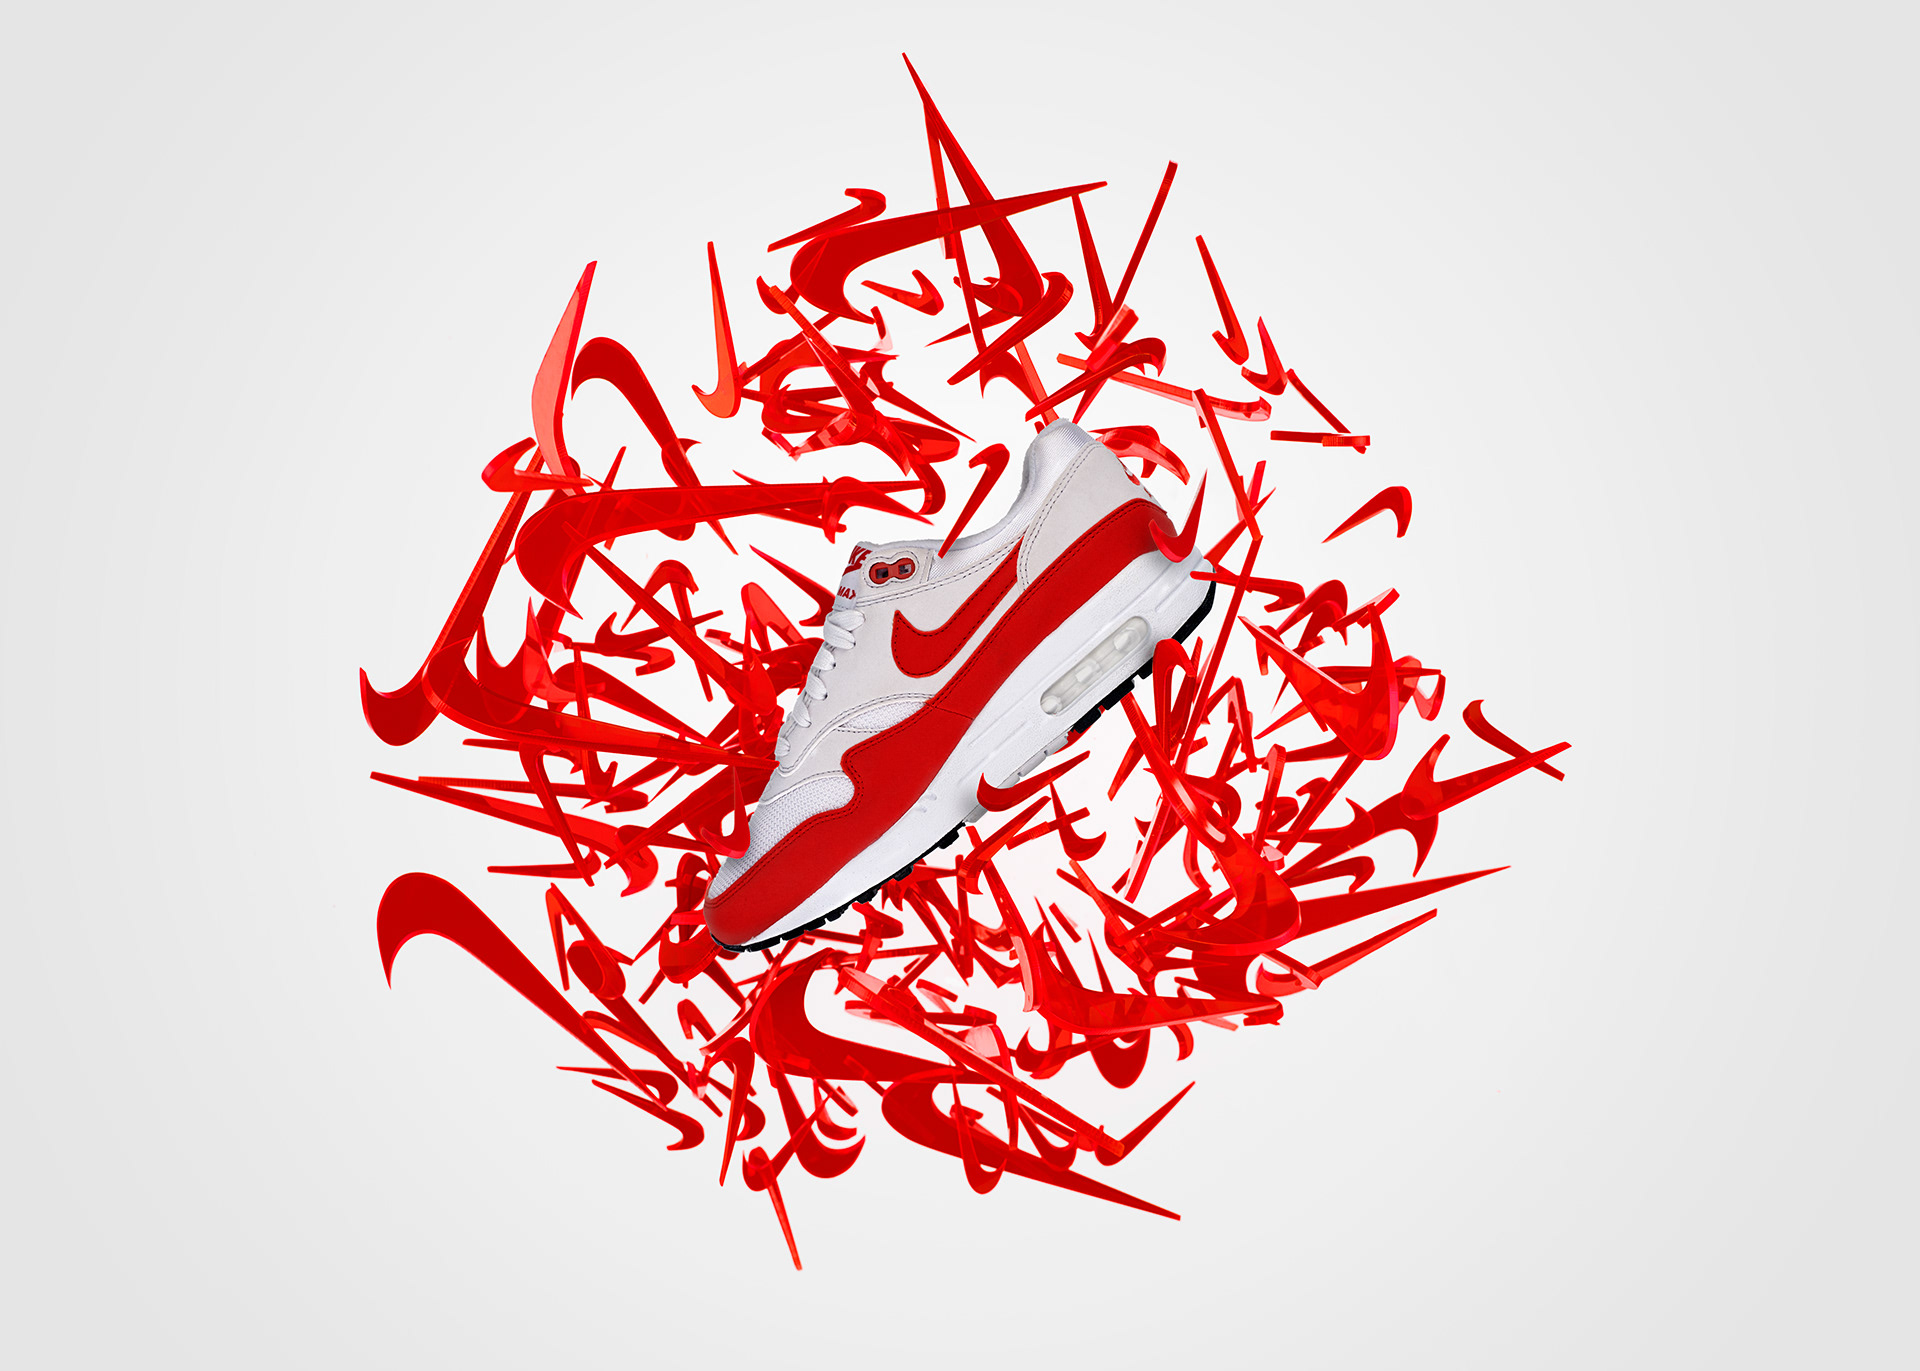 Les sneakers au Maroc : la contrefaçon et la firme Nike